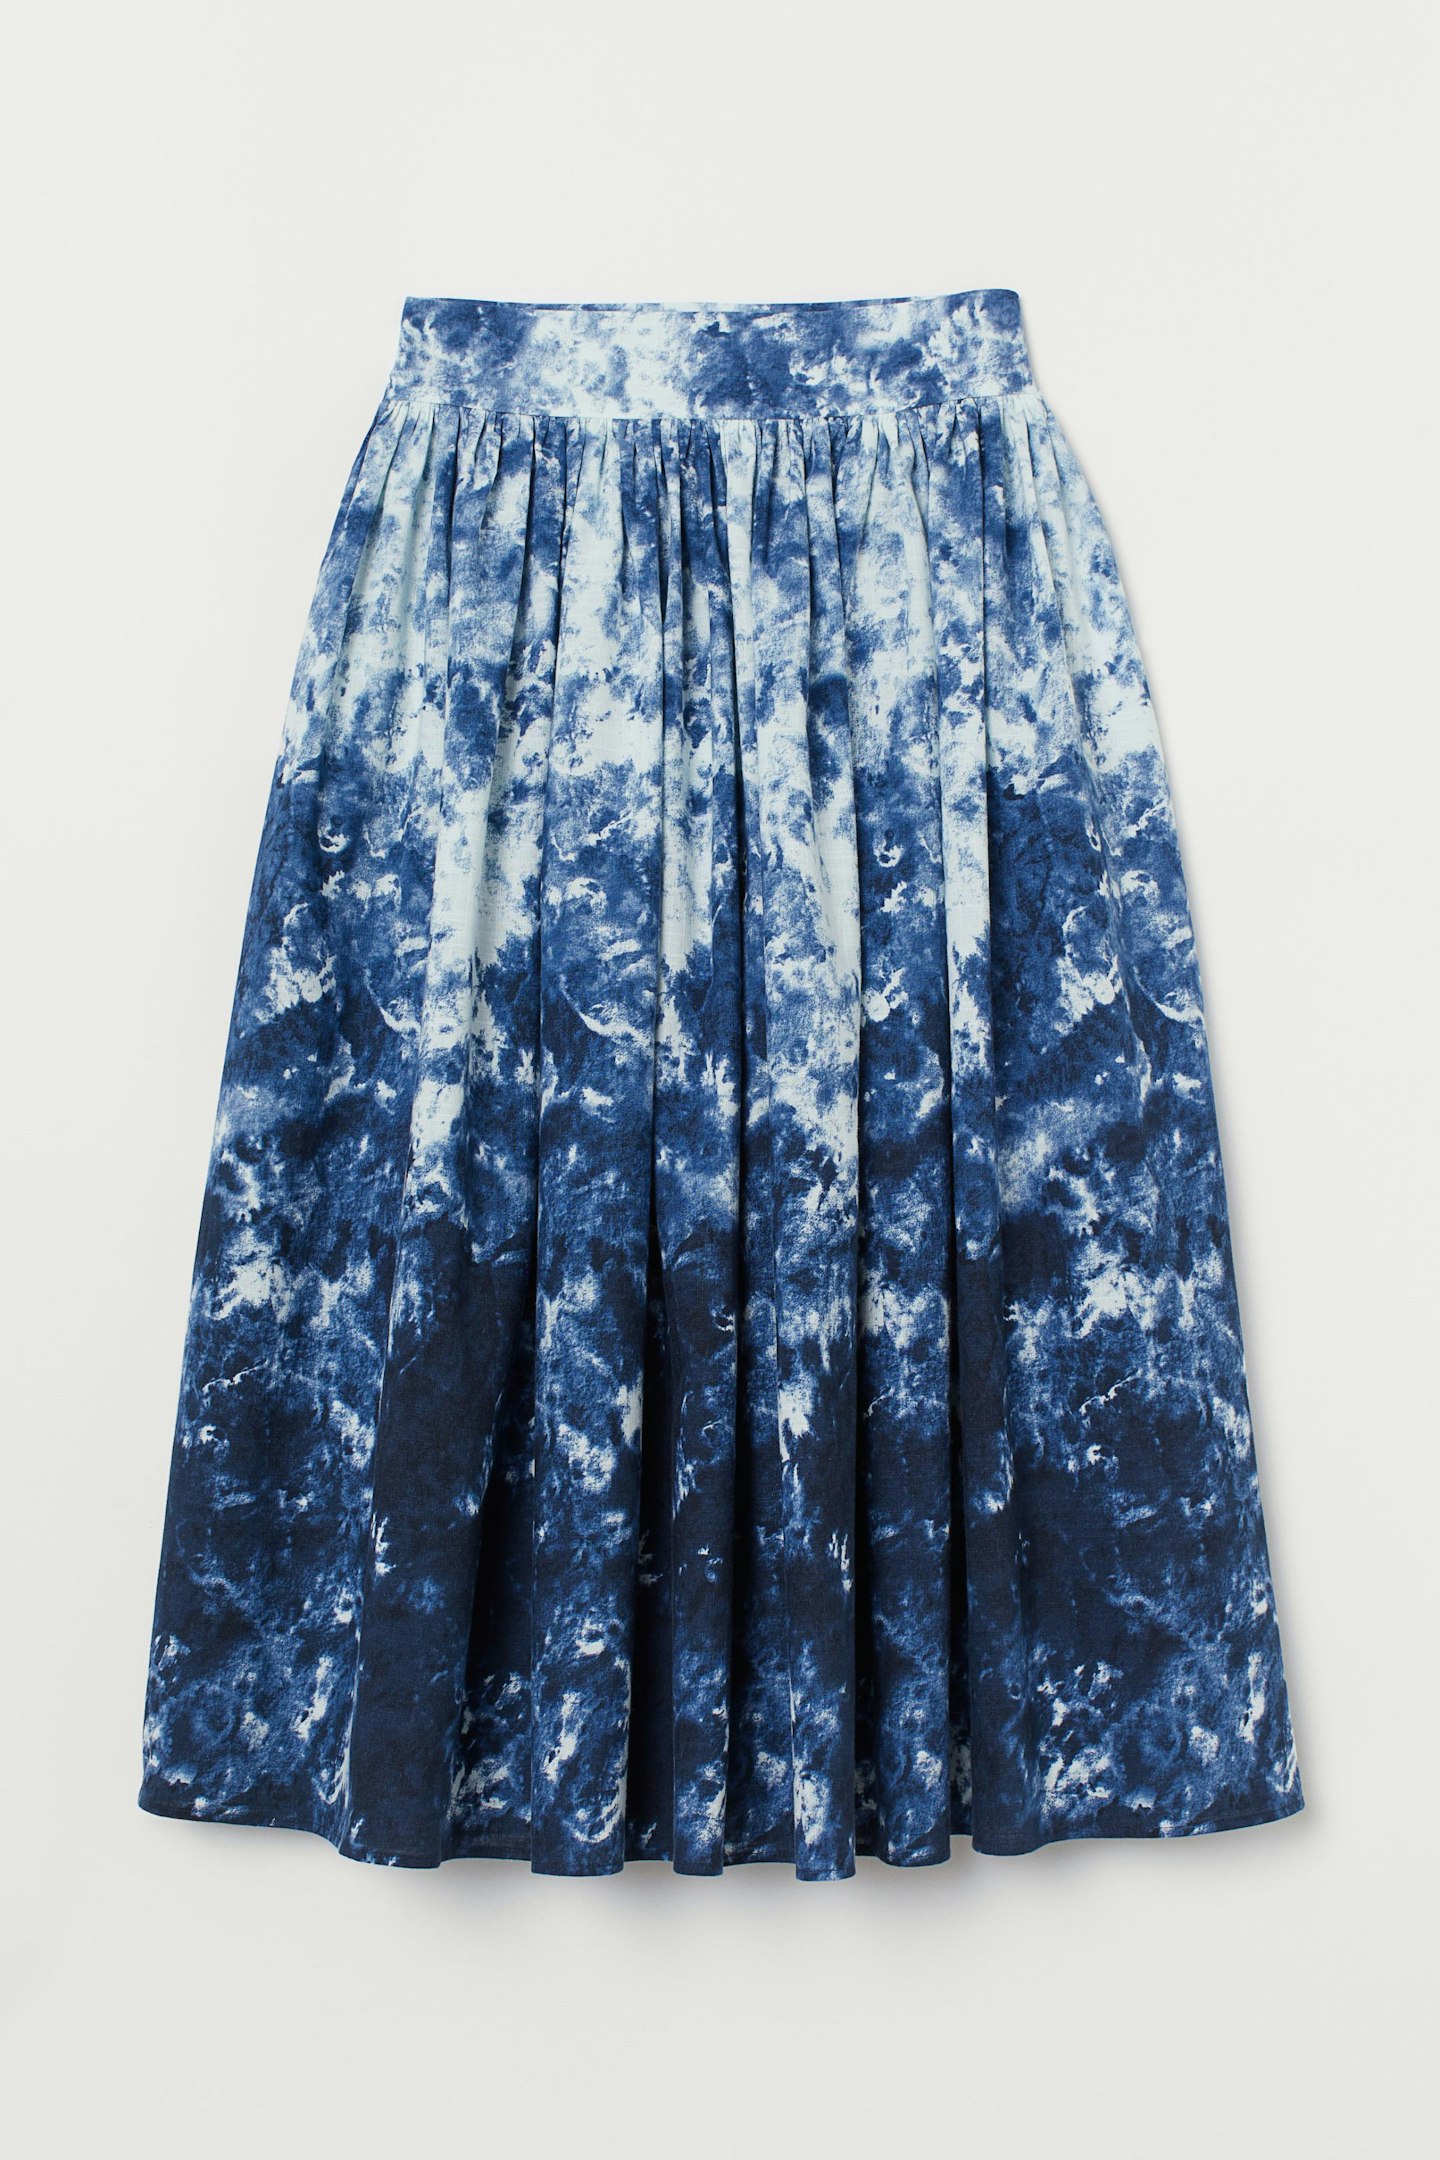 H&M, Skirt, £34.99